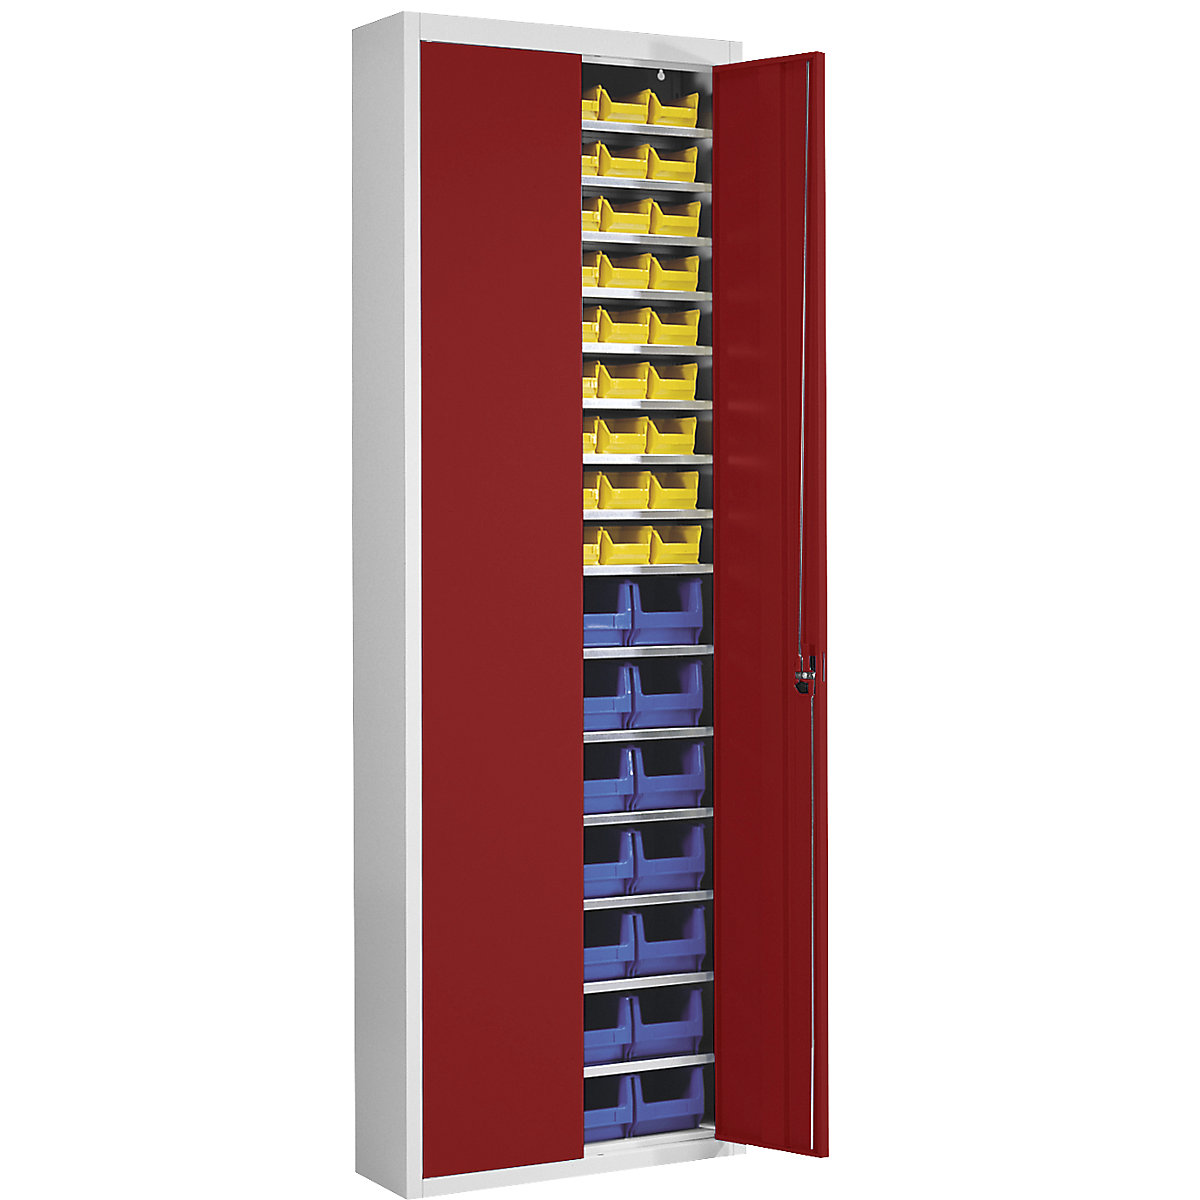 Magazinschrank mit Sichtlagerkästen mauser, HxBxT 2150 x 680 x 280 mm, zweifarbig, Korpus grau, Türen rot, 82 Kästen-5